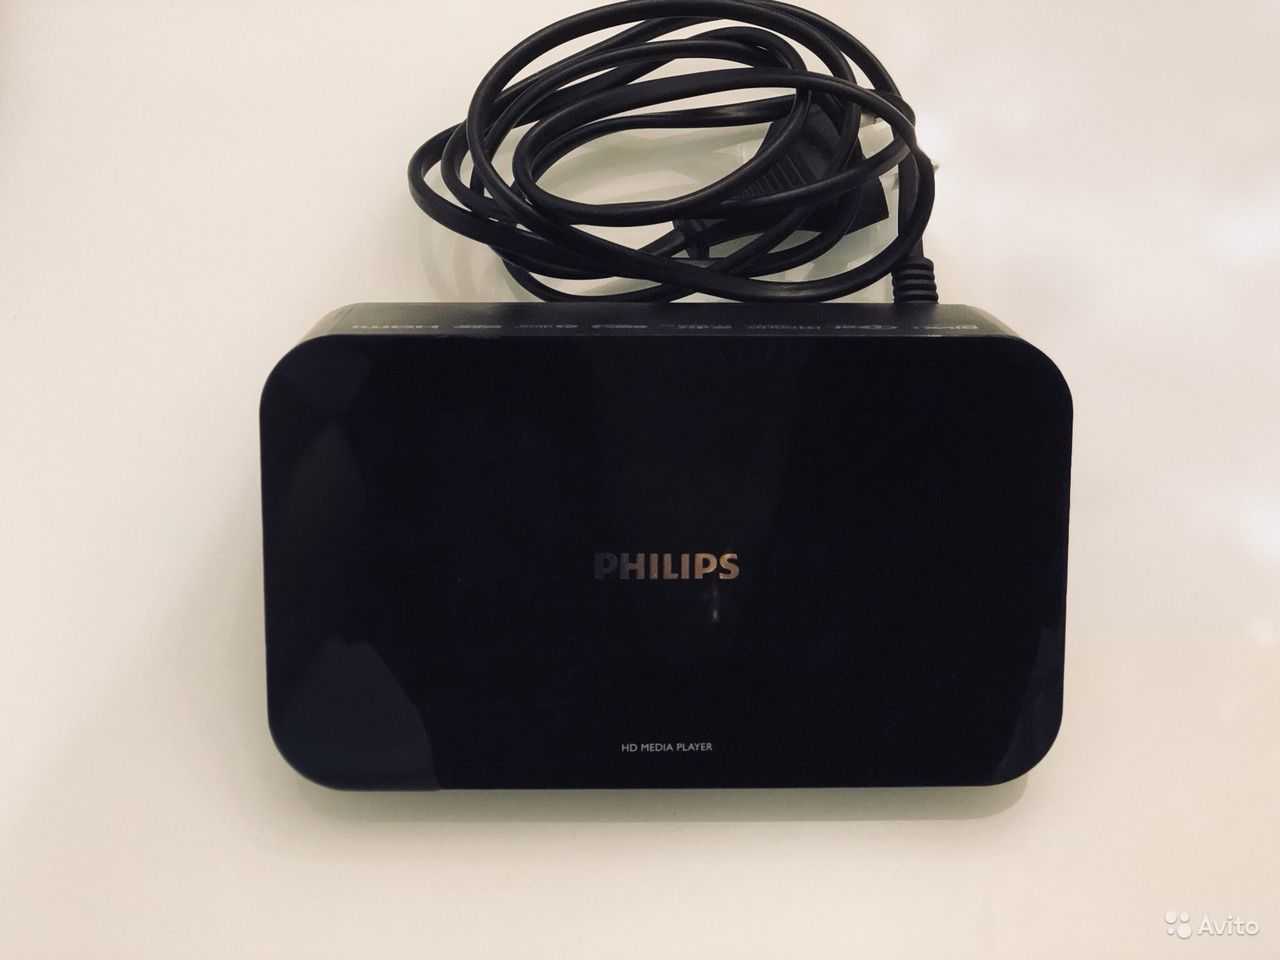 Philips hmp5000 - купить , скидки, цена, отзывы, обзор, характеристики - hd плееры